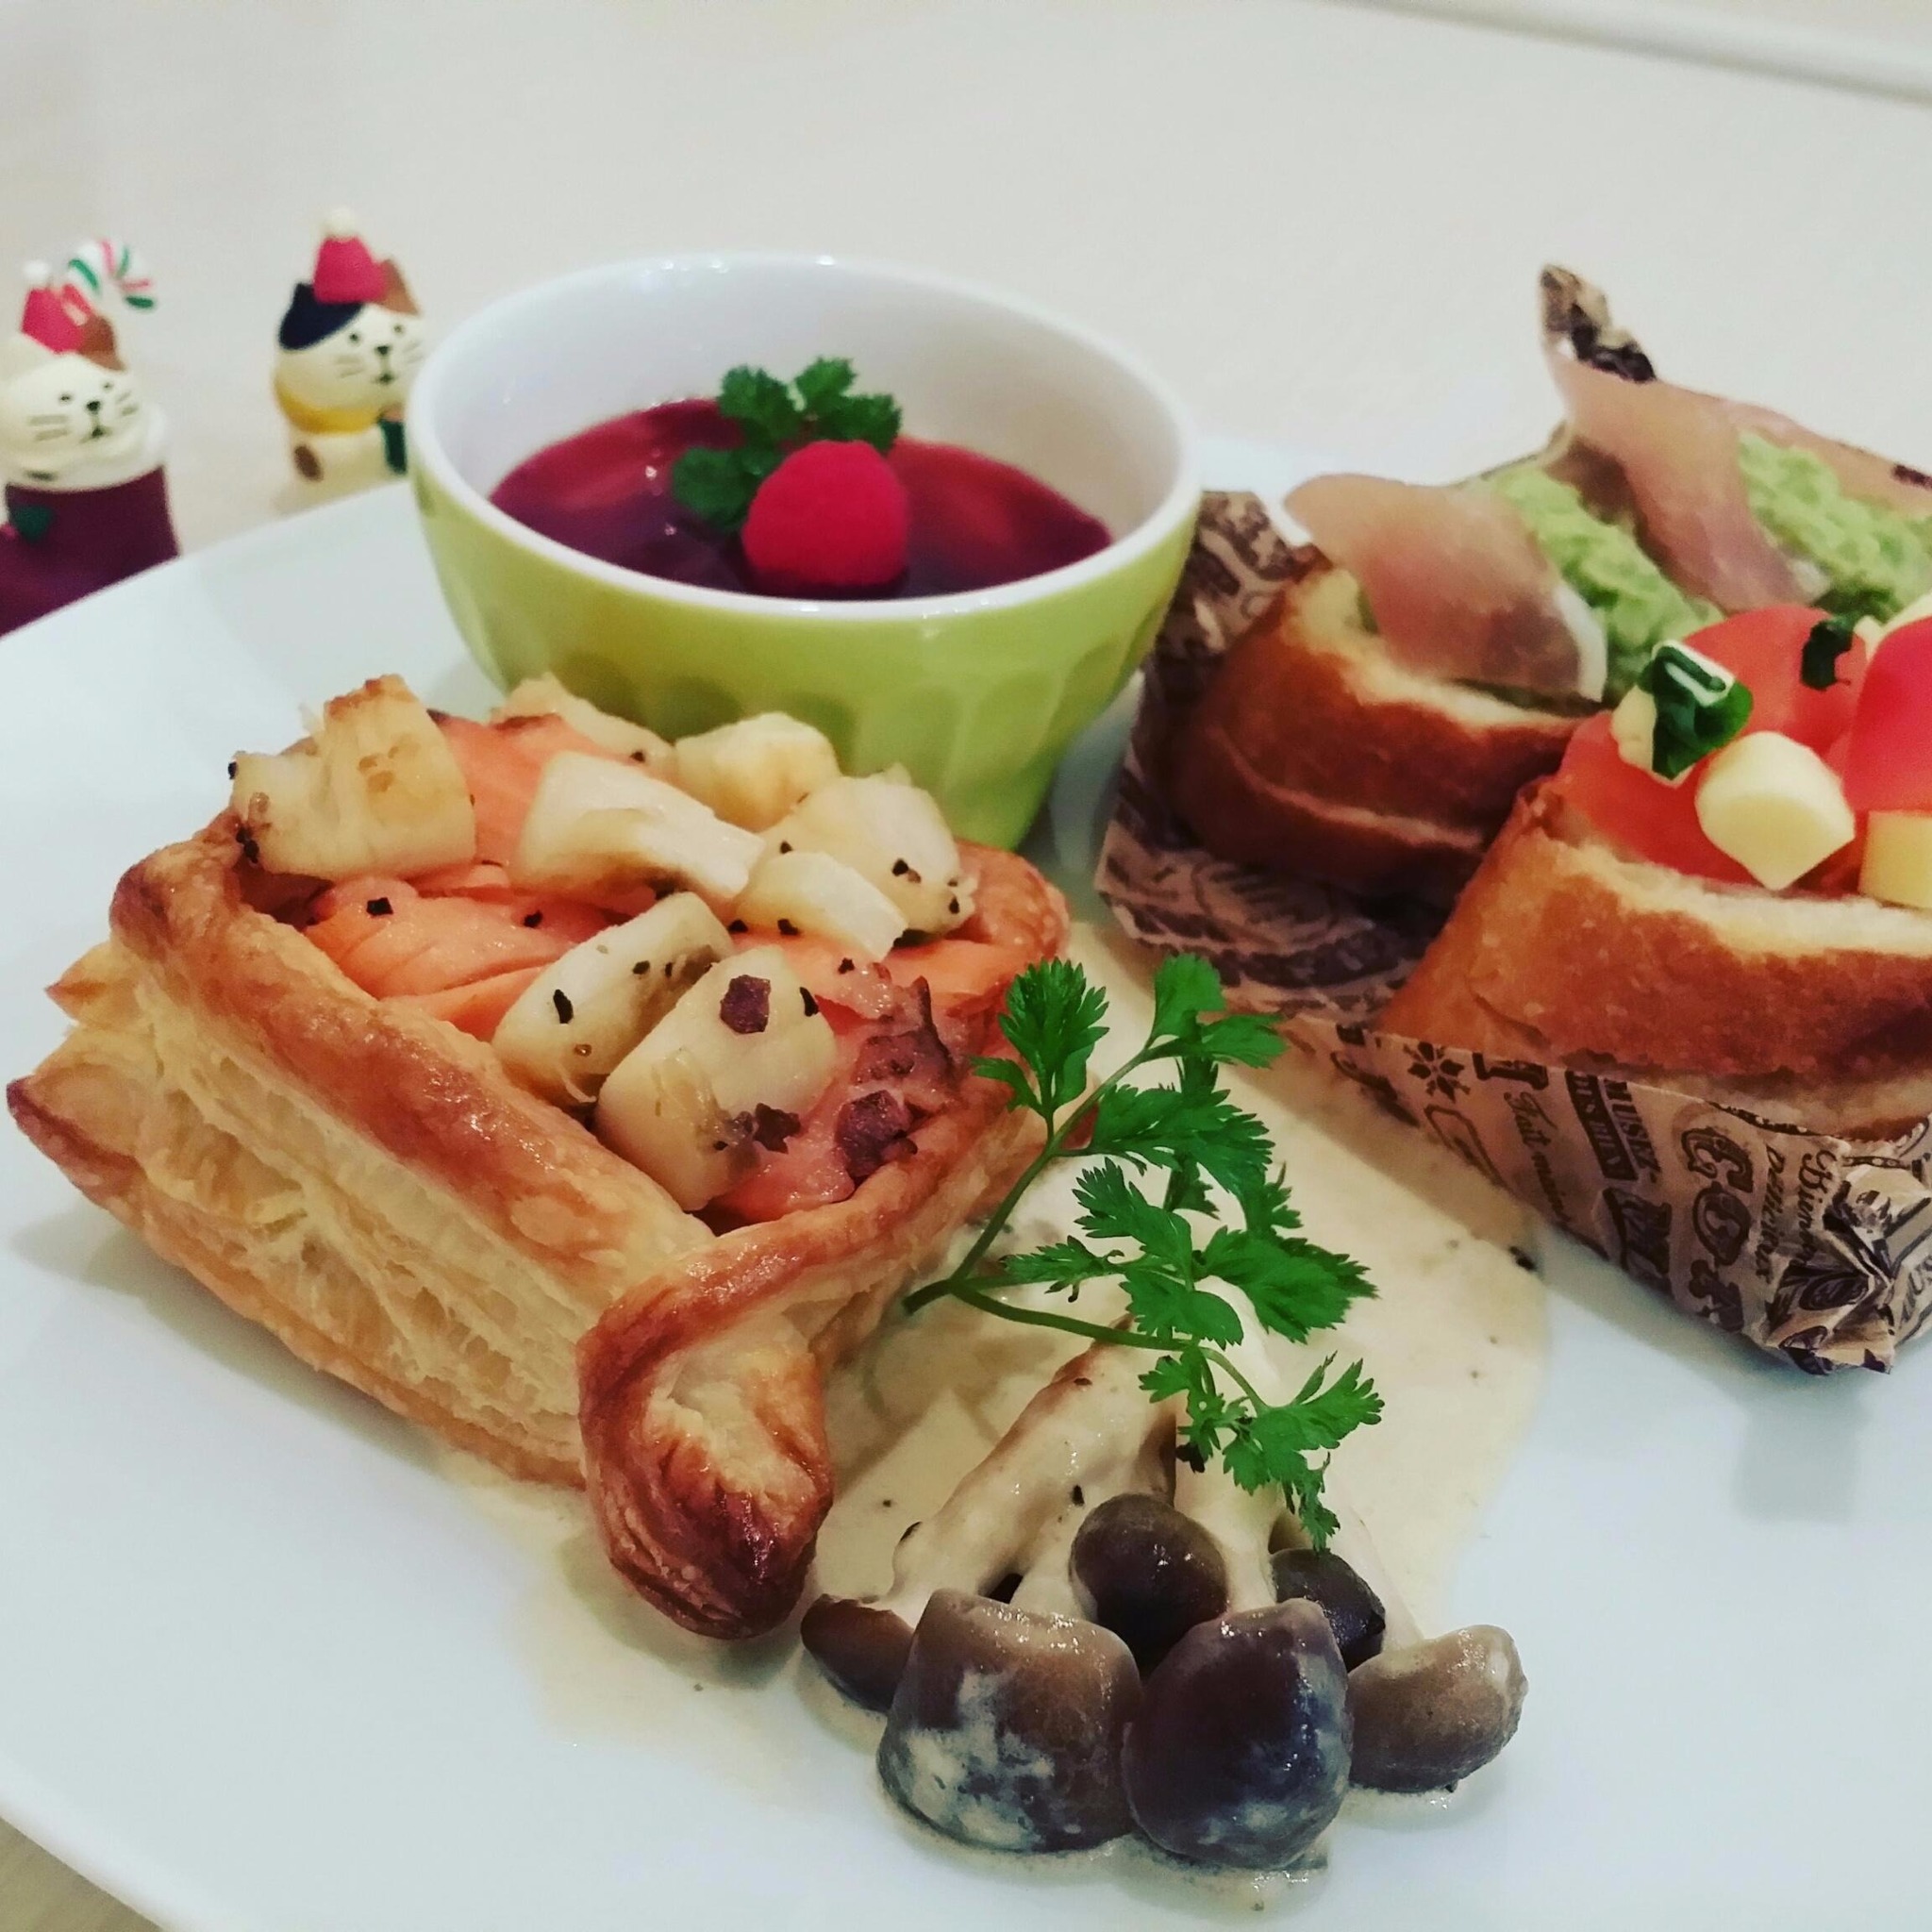 パイシートを使ってクリスマスおもてなし料理 開催 Cooking Club タブリエ 愛知県名古屋市中区 の年12月レッスン情報 料理 教室検索サイト クスパ